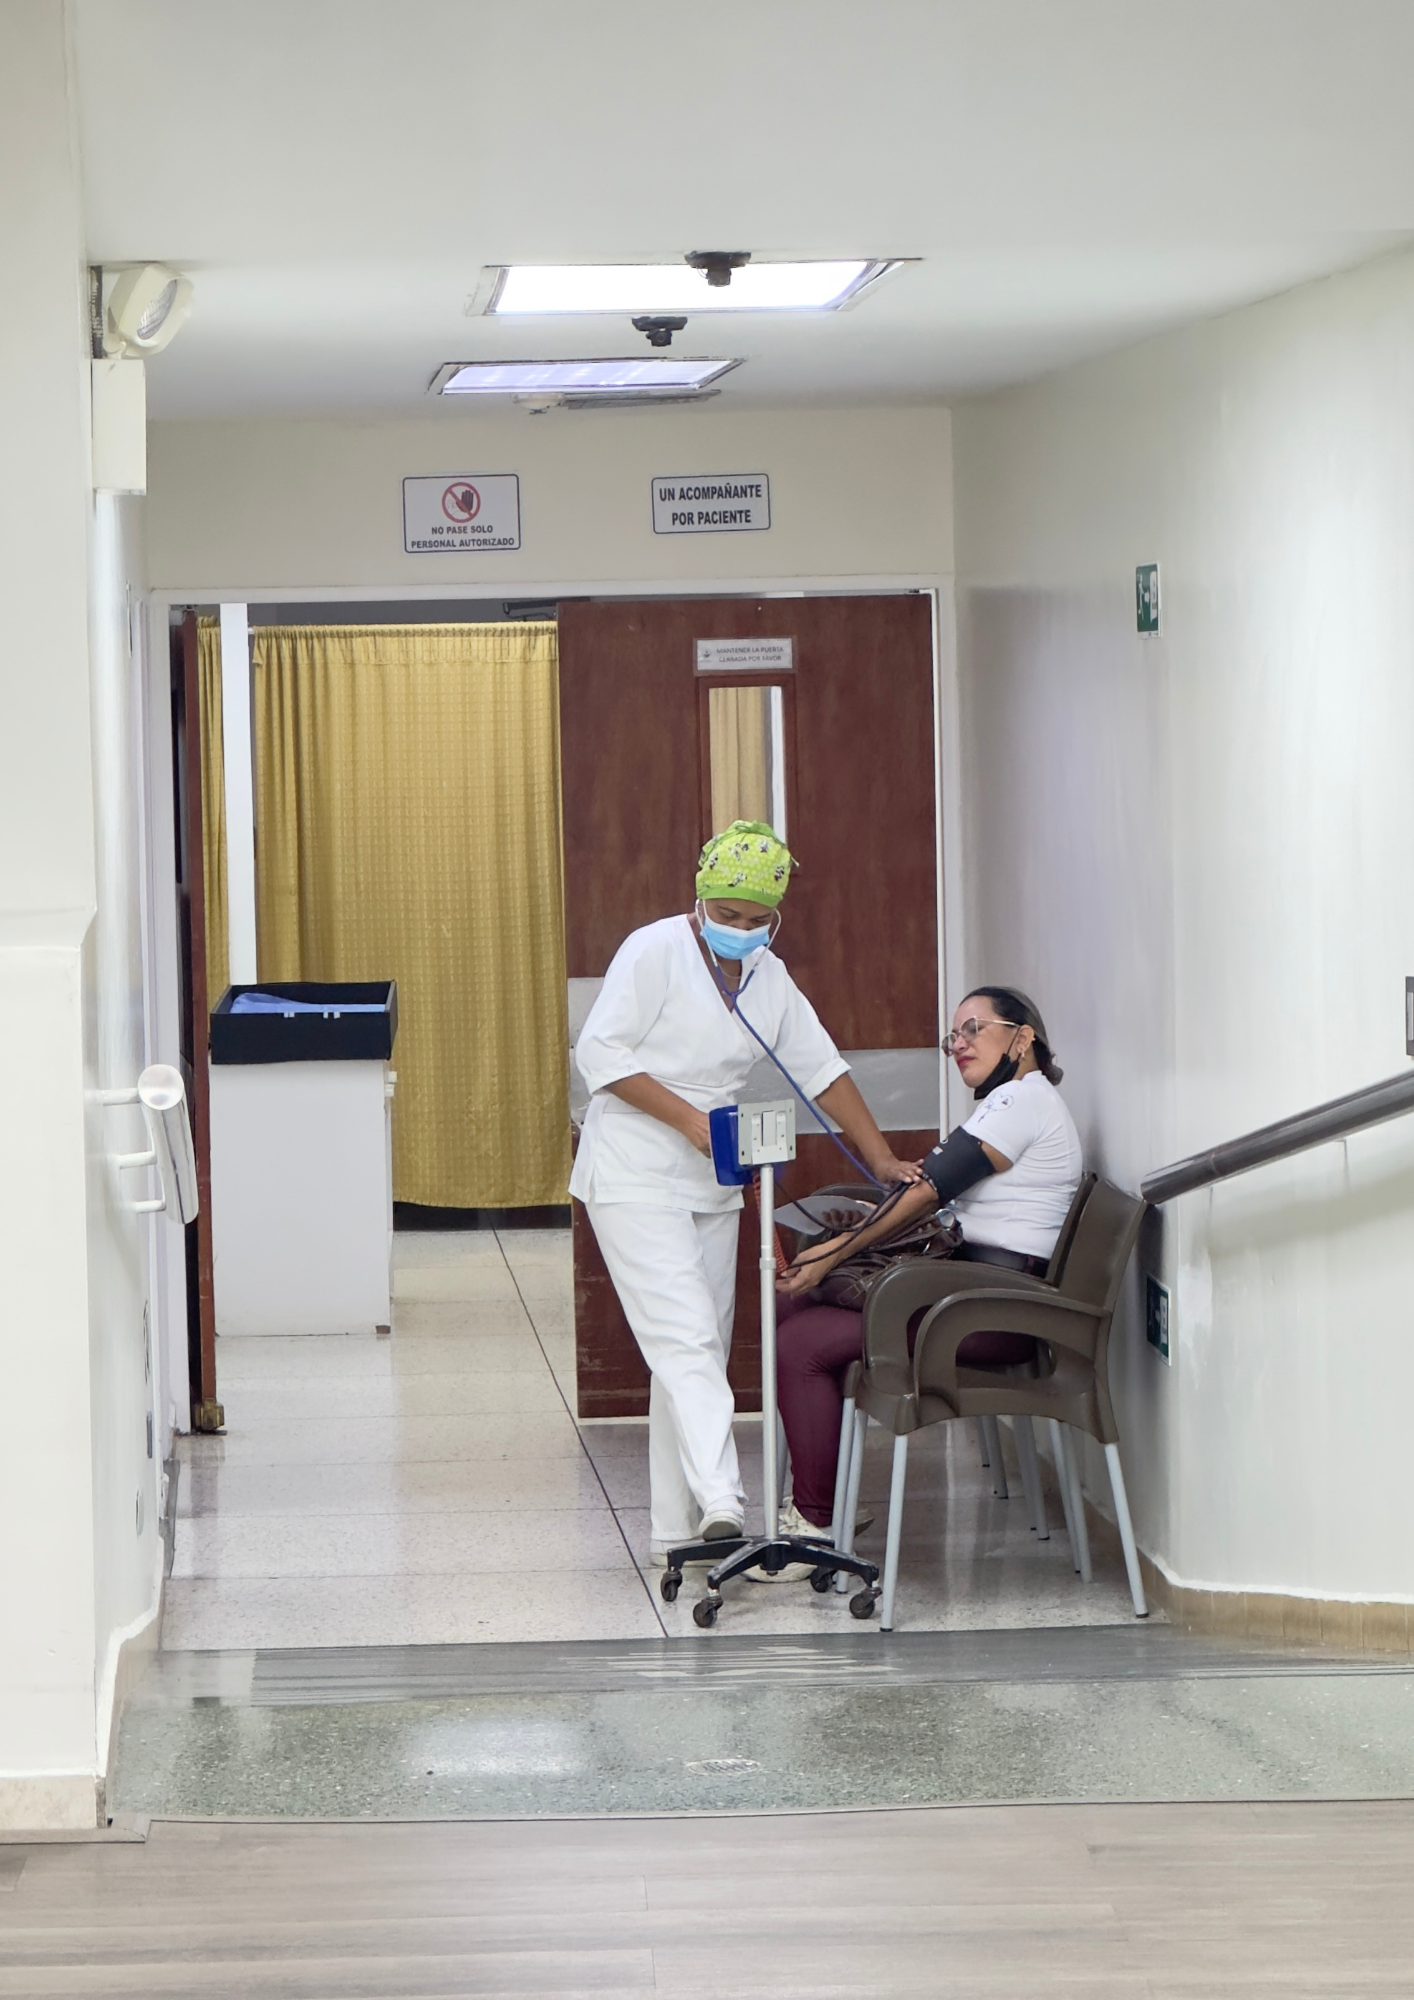 Enfermeras en centro medico san francisco de barquisimeto lara venezuela